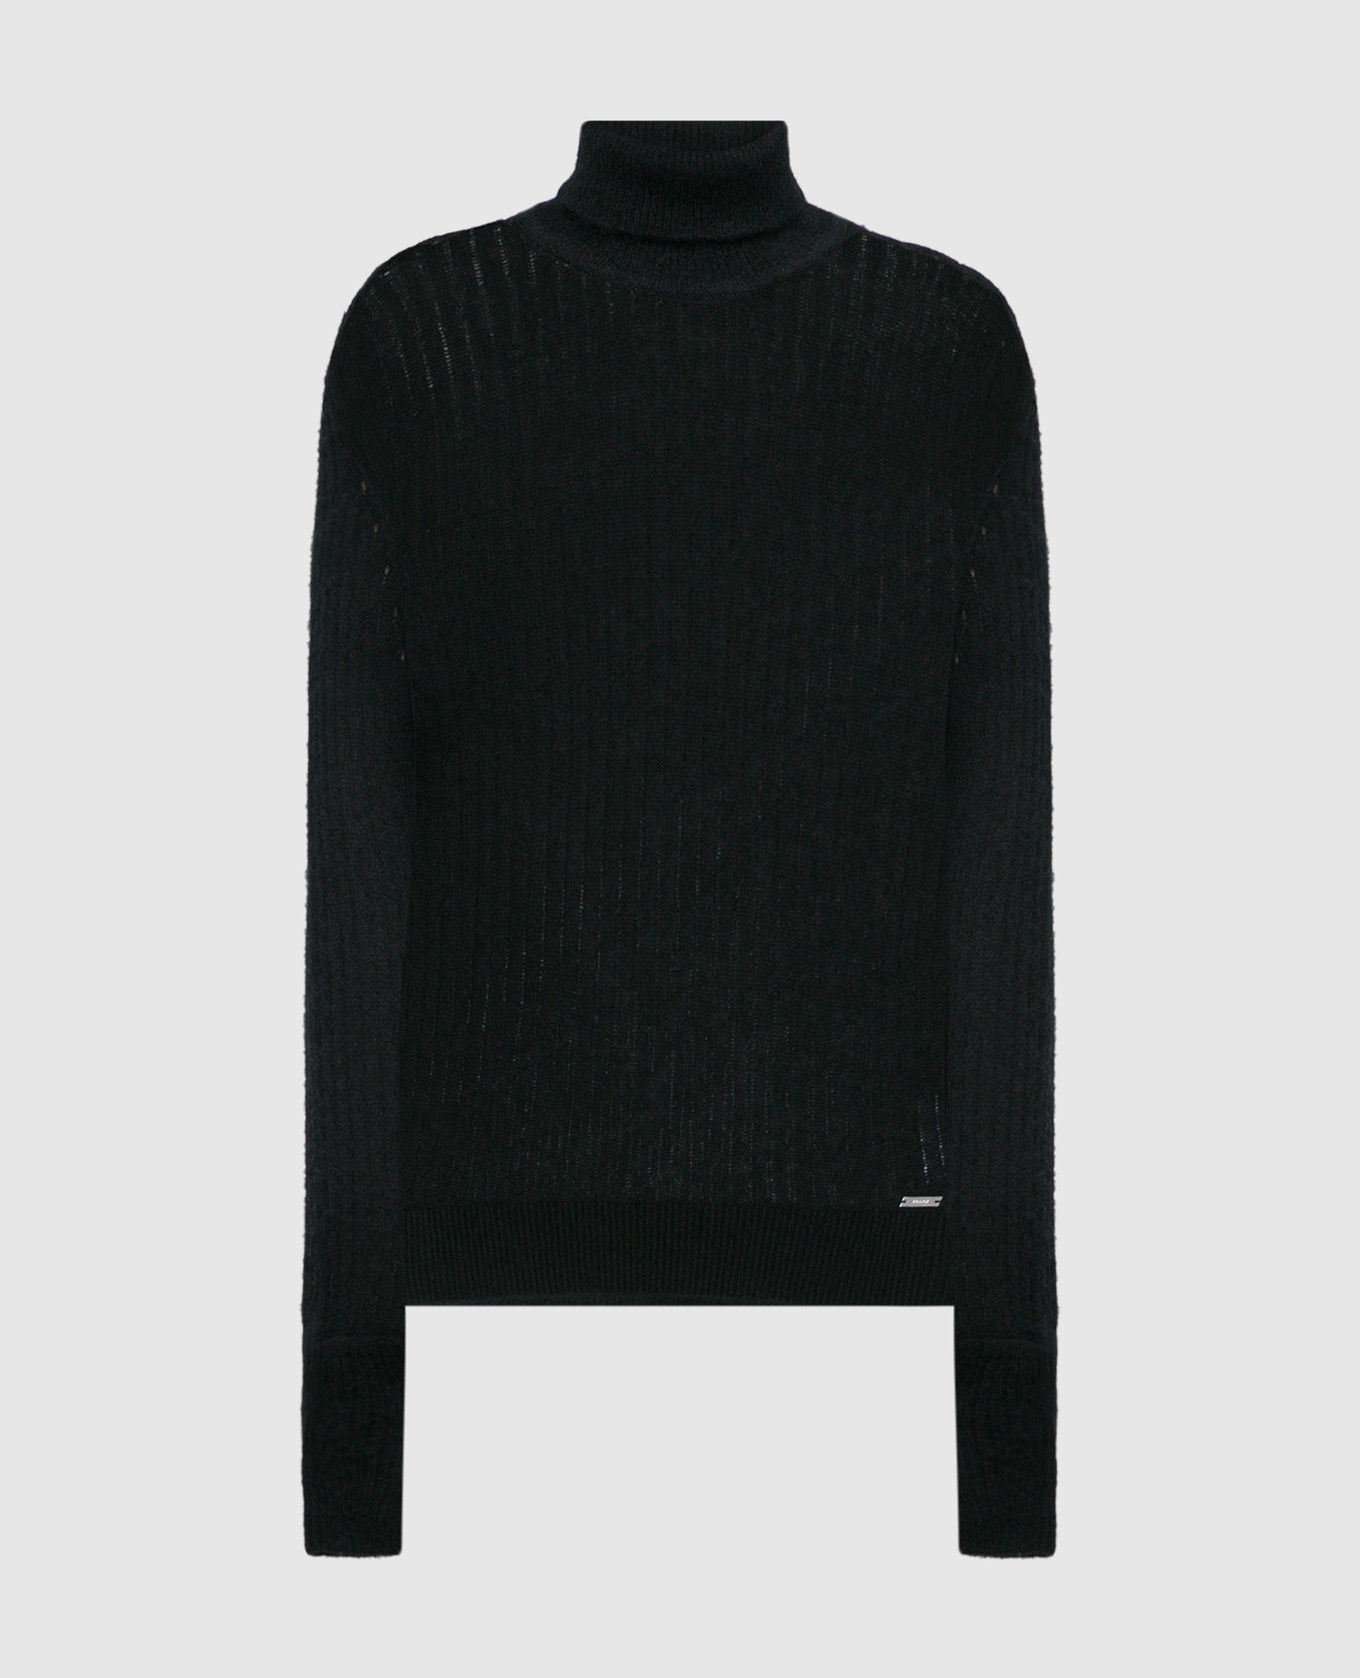 Черный свитер с кашемиром и шелком в рубчик.